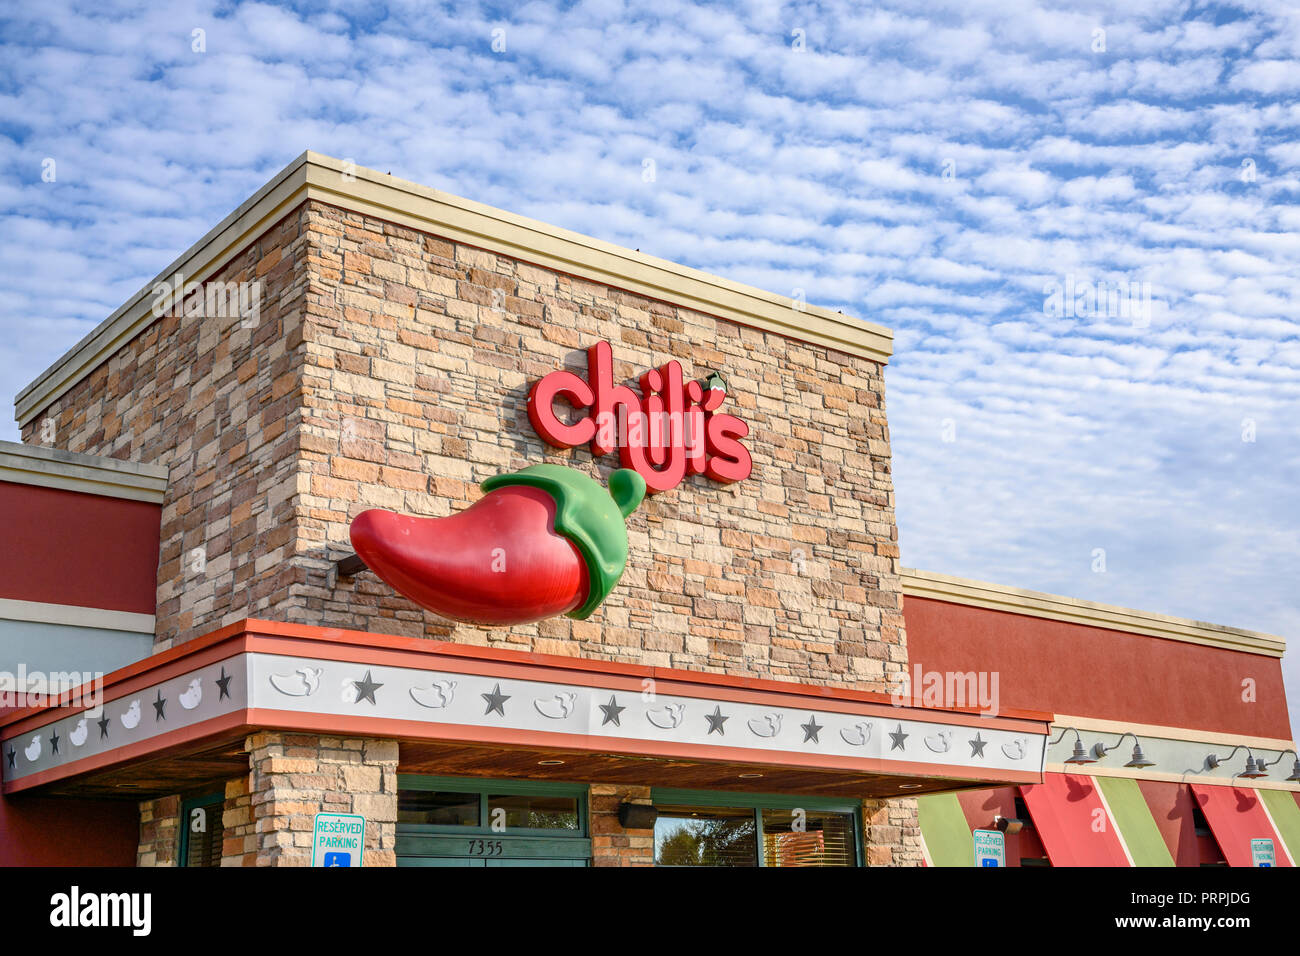 Chili's family restaurant/entrée extérieure de la chaîne montrant le restaurant et le logo de l'entreprise Inscrivez-vous à Montgomery, Alabama, USA. Banque D'Images